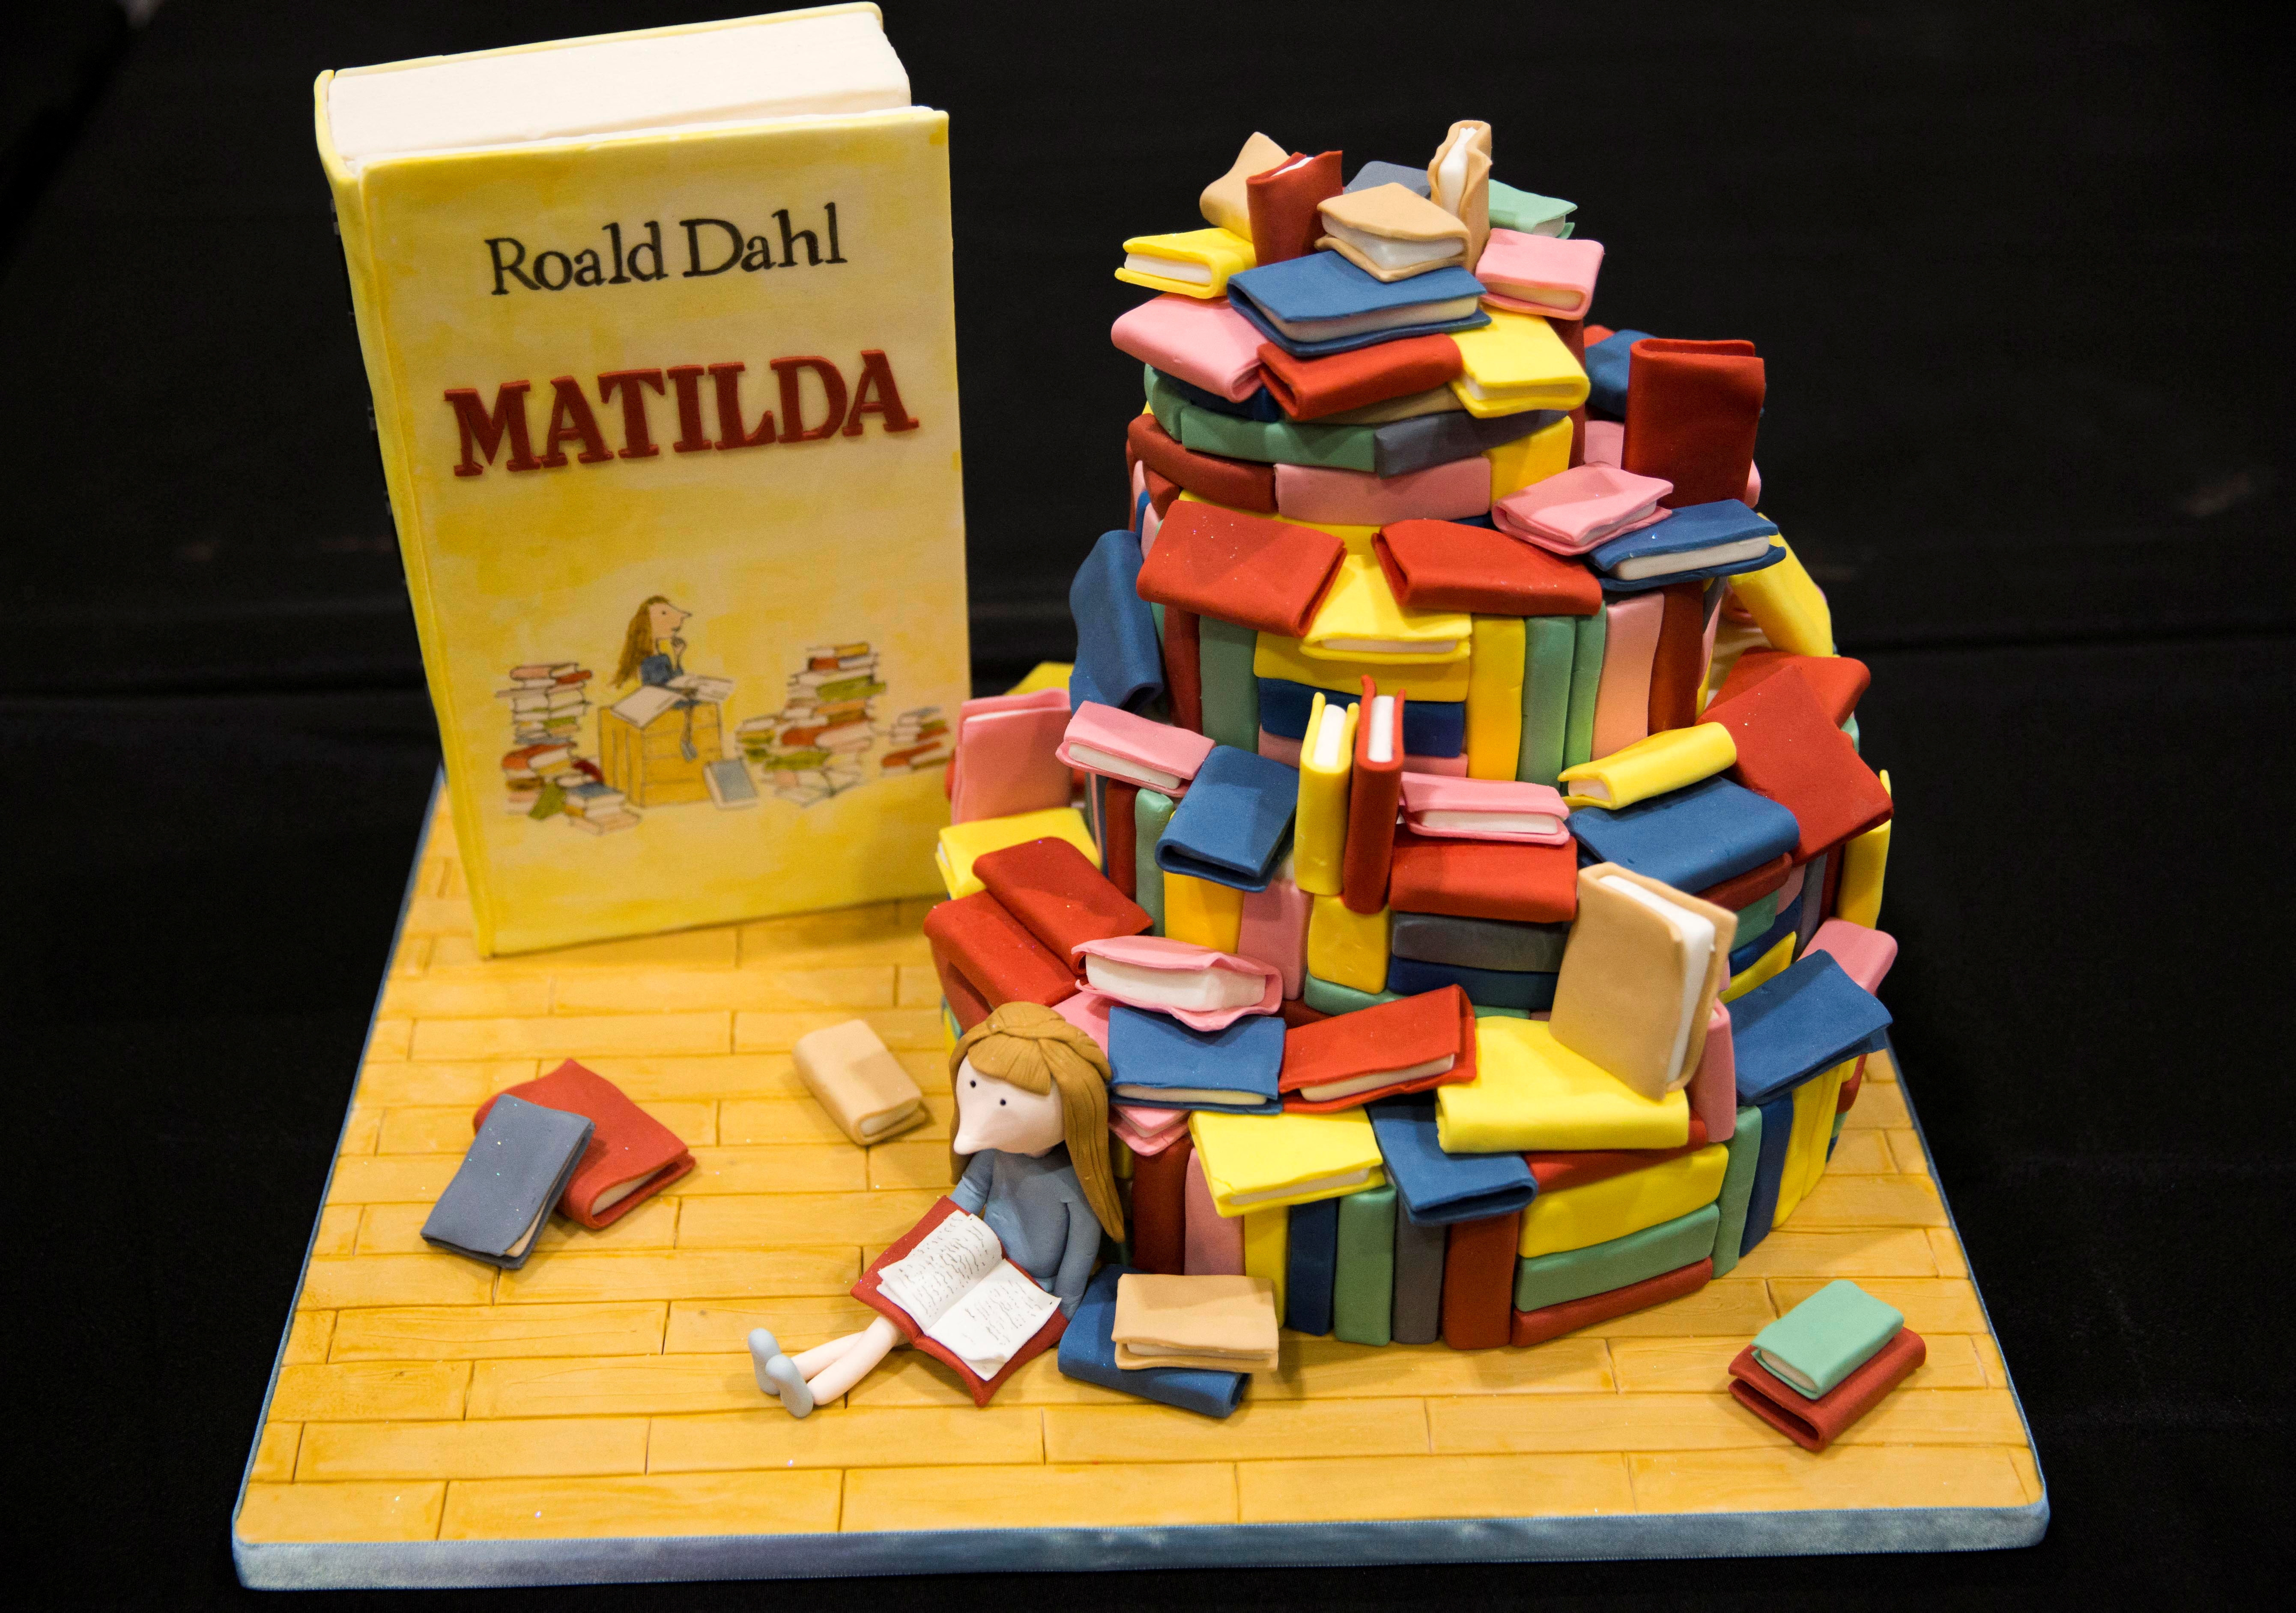 Un pastel decorado al estilo del libro infantil de Roald Dahl "Matilda" se exhibe en el espectáculo Cake and Bake en Londres, Gran Bretaña.